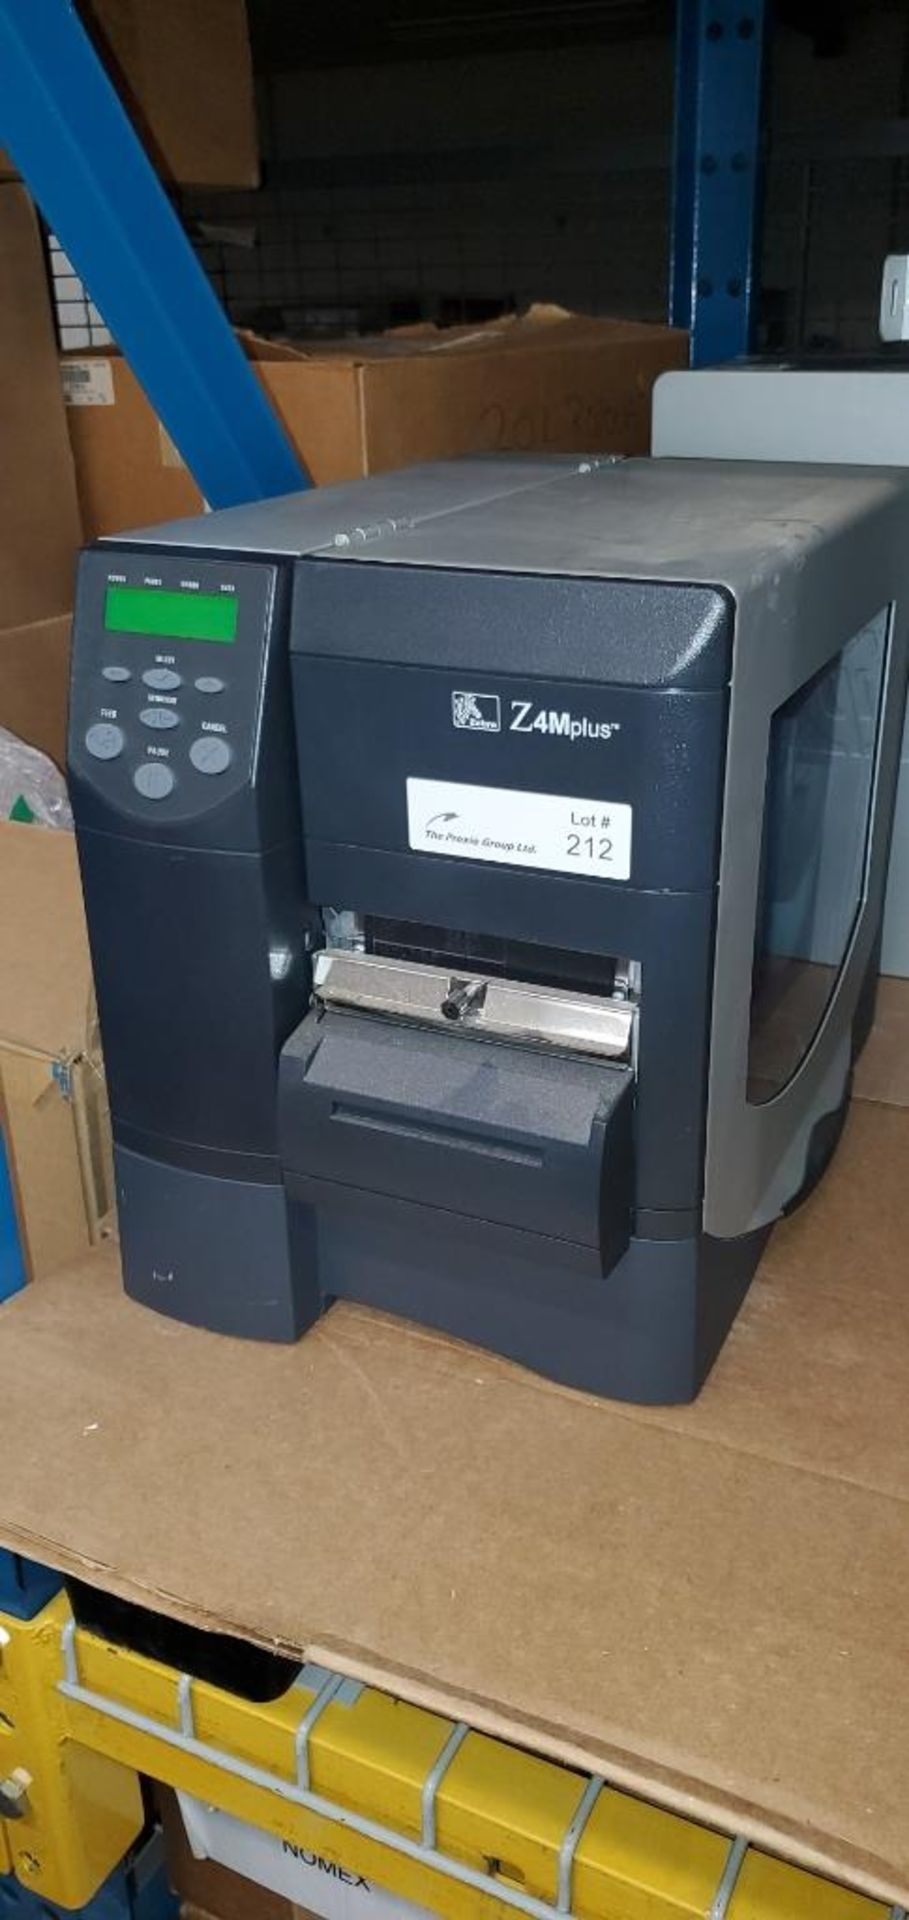 Zebra Model Z4M Plus Thermal Label Printer - Image 2 of 3